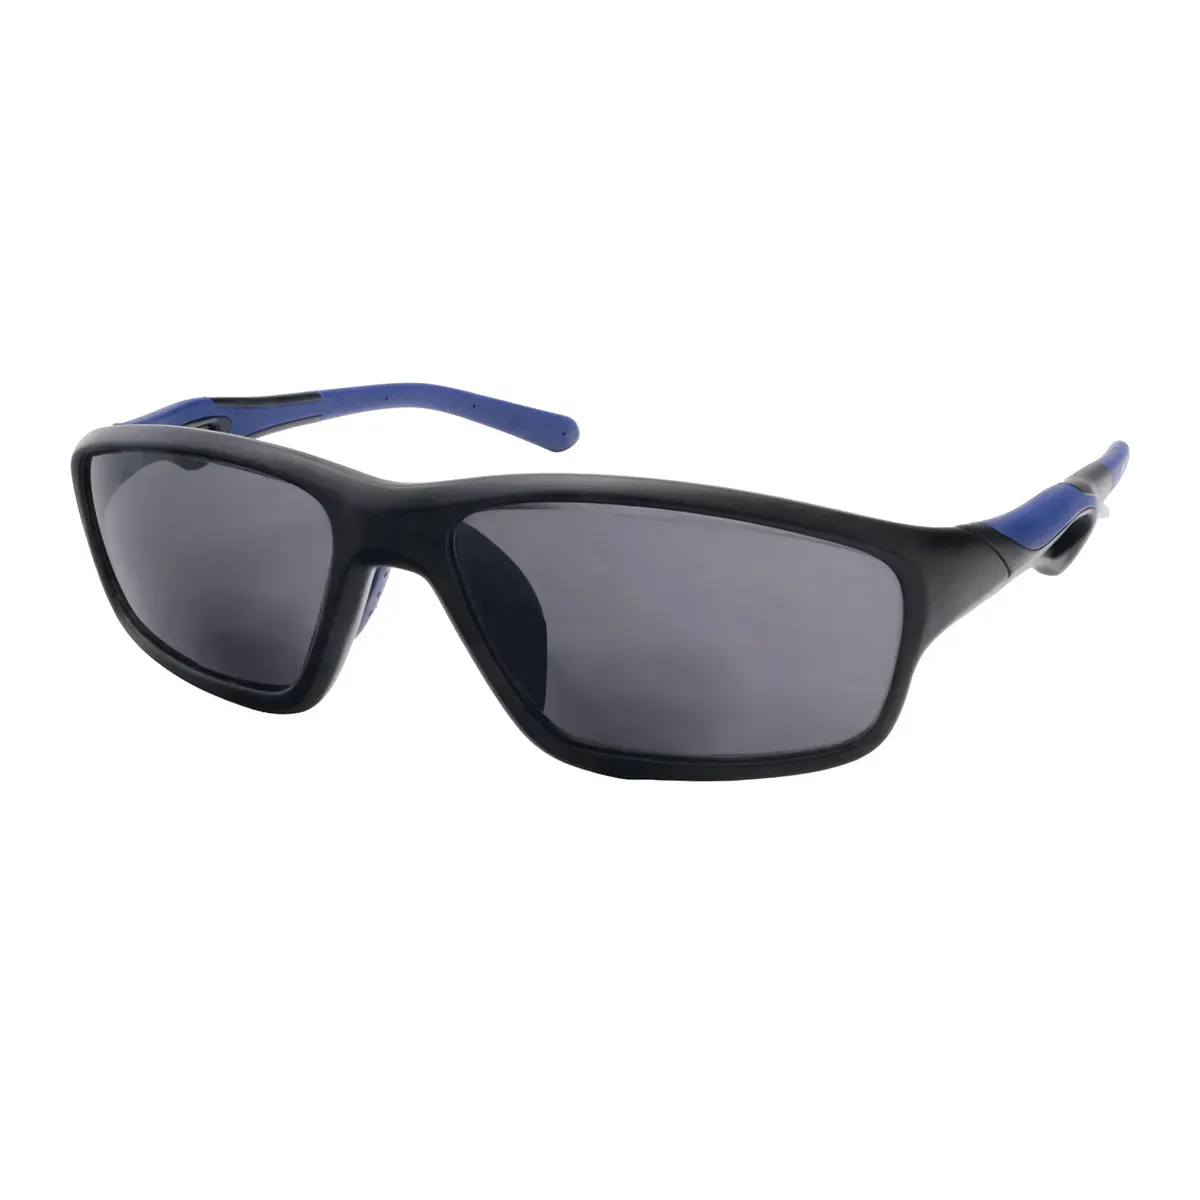 Kent - Rectangle Black Sunglasses for Men & Women